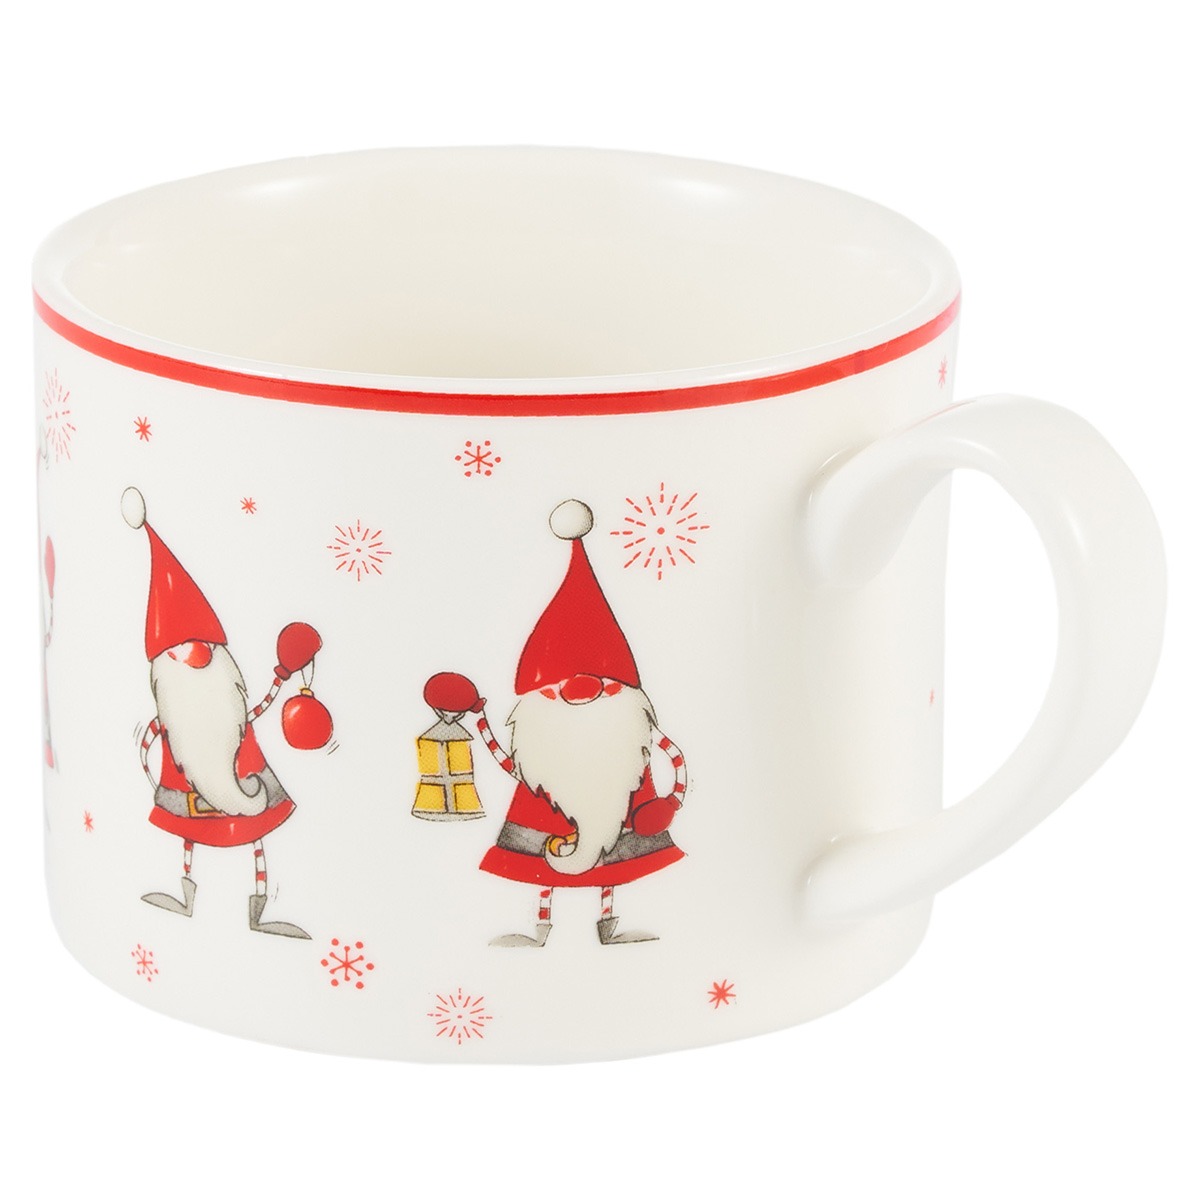 Чайная пара Gipfel Christmas фарфор белый с красным чашка 250 мл, блюдце 14 см, цвет красный - фото 5